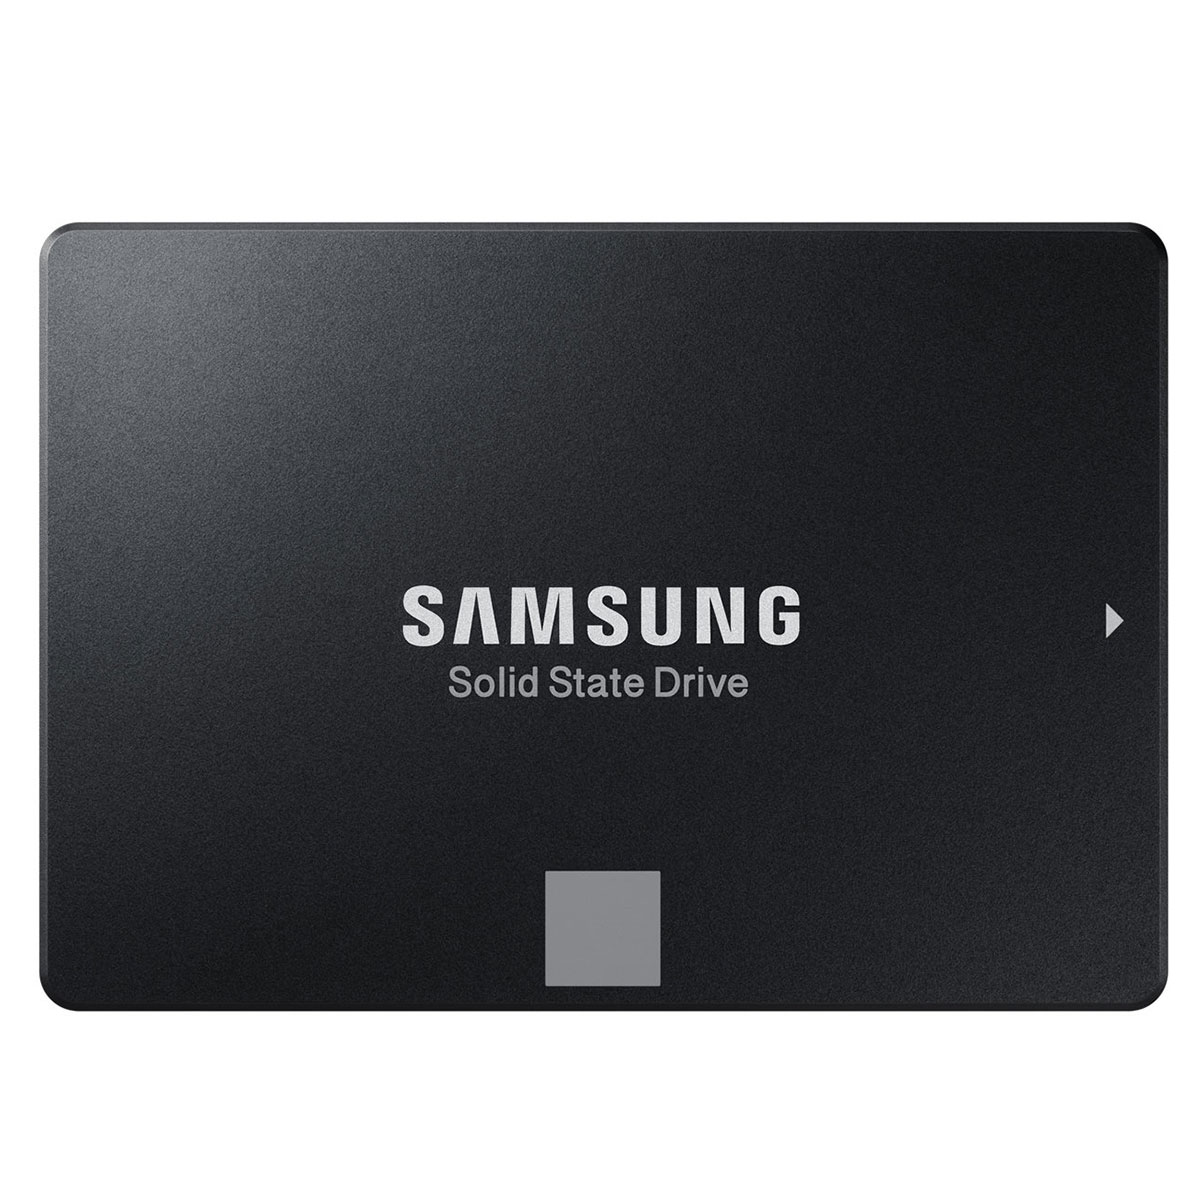 Disque dur SSD Samsung SSD 860 evo 250 Go 2.5 Serial ATA 6Gb/s, informatique ile de la Runion 974